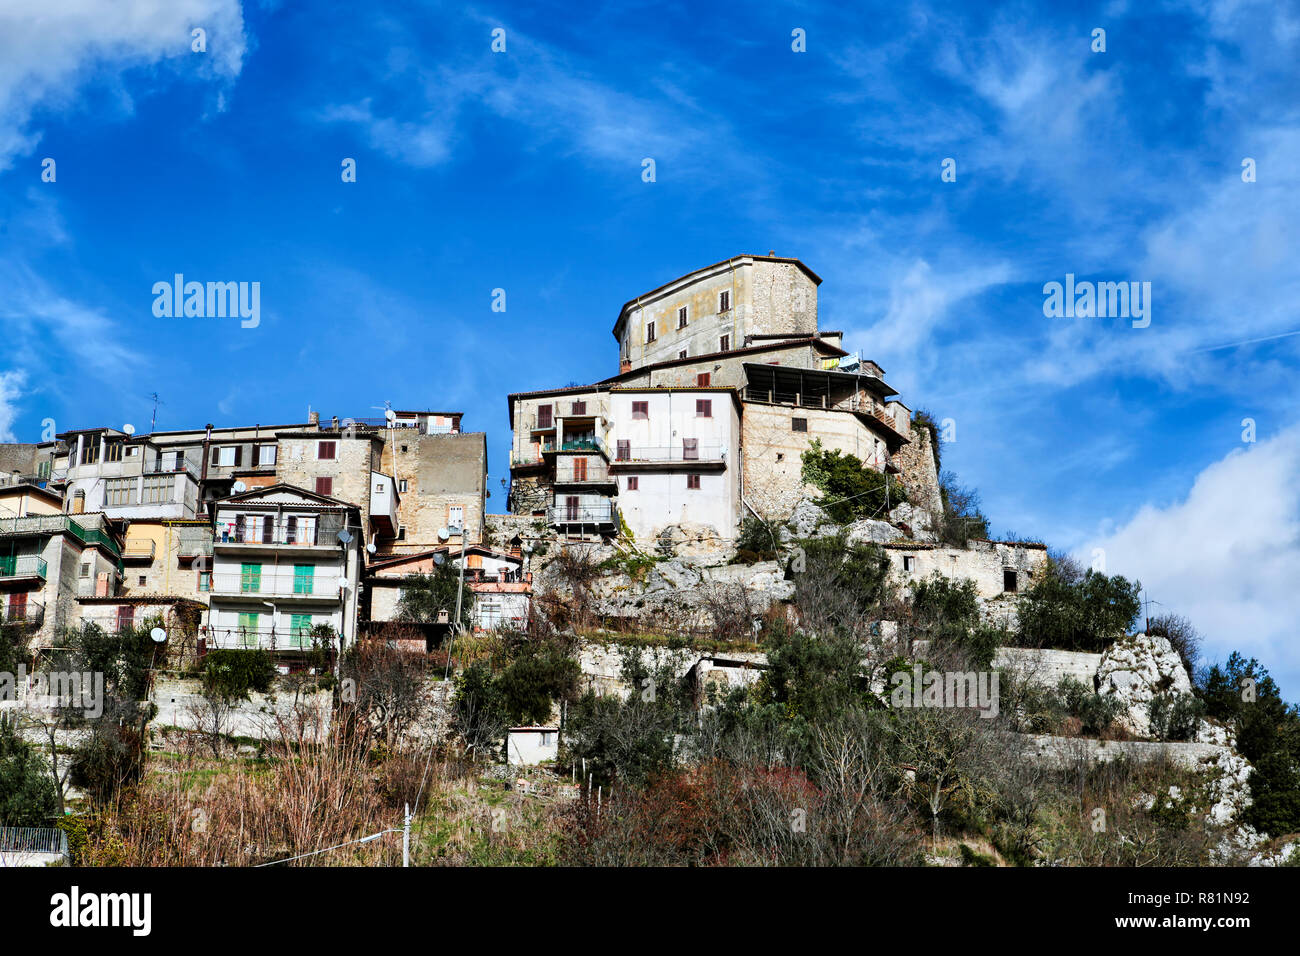 Paysage de l'ancien village de Castel di Tora une belle italienne villages situés dans la région du Lazio - Italie Banque D'Images